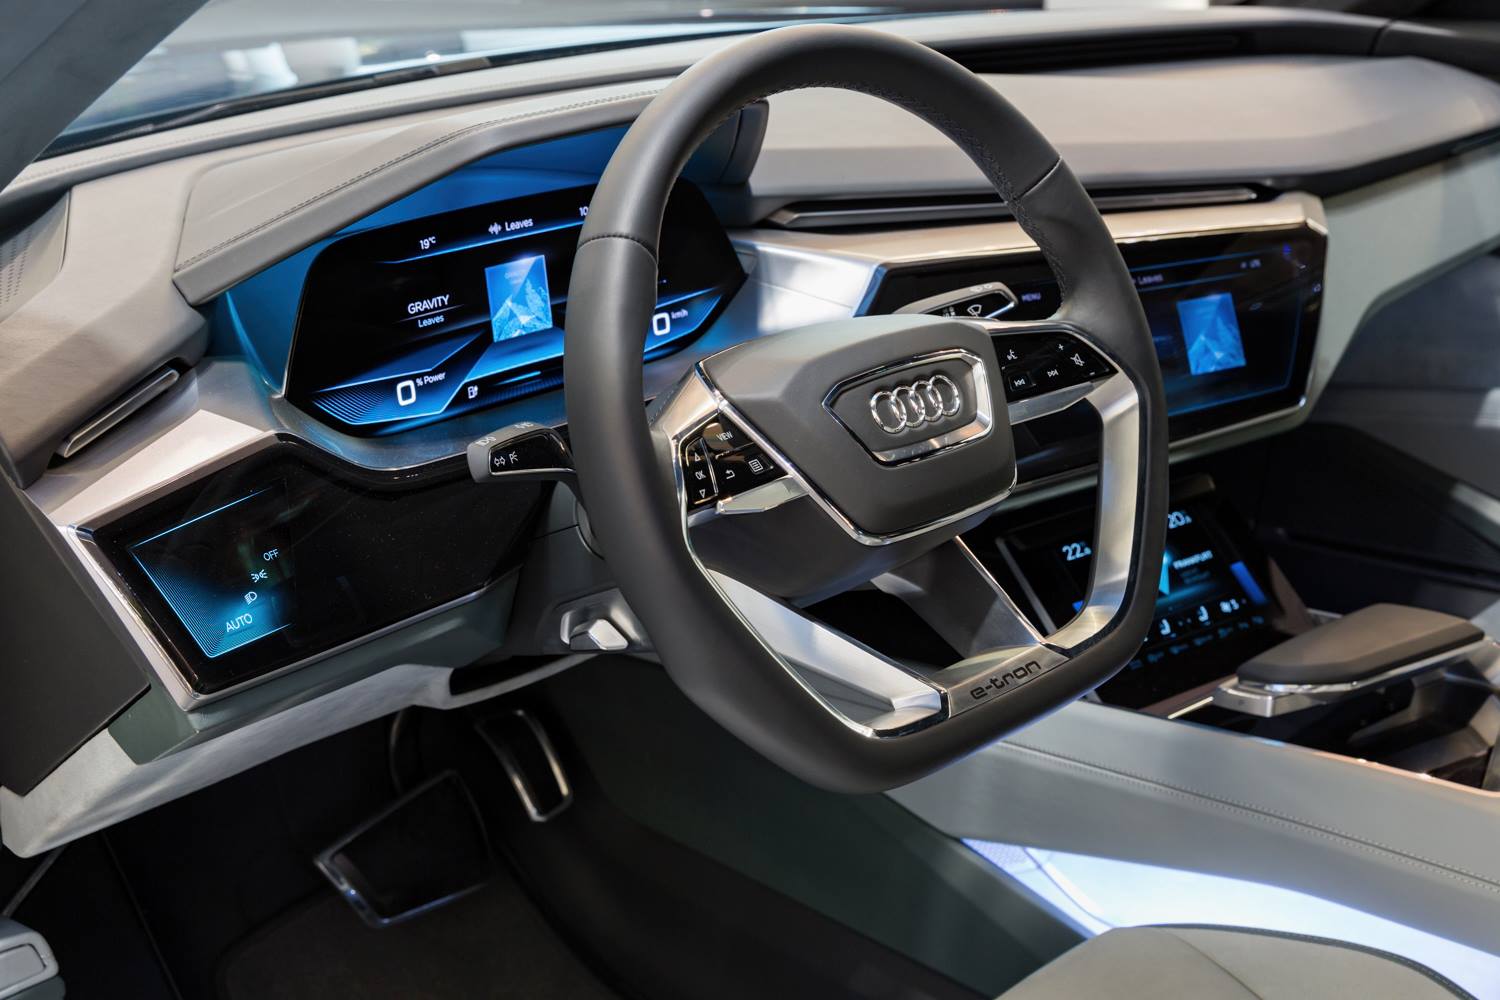 “أودي” A8 الجديدة ستكون أول موديل إنتاج بمقصورة أودي الافتراضية Audi